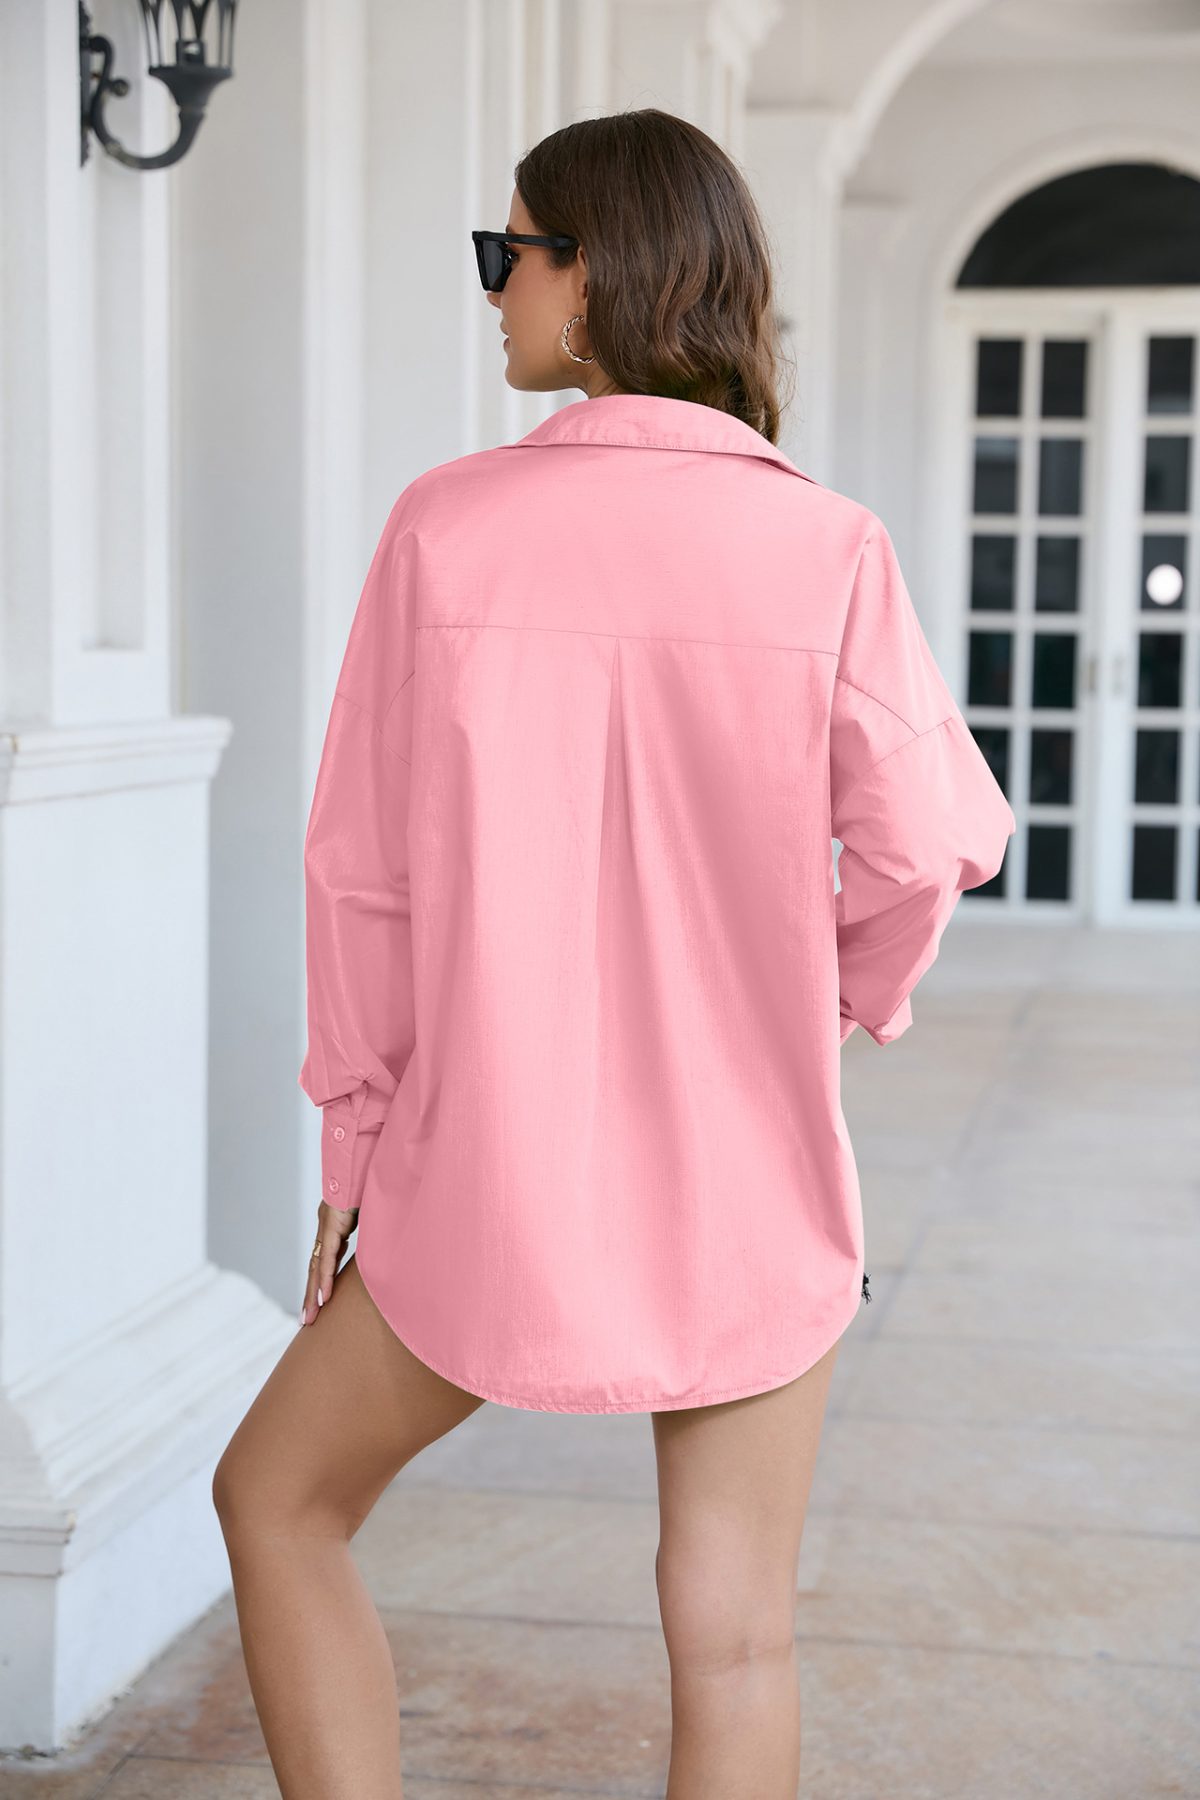 Cotton Solid Color Bright Shirt - Blouses & Shirts - Uniqistic.com